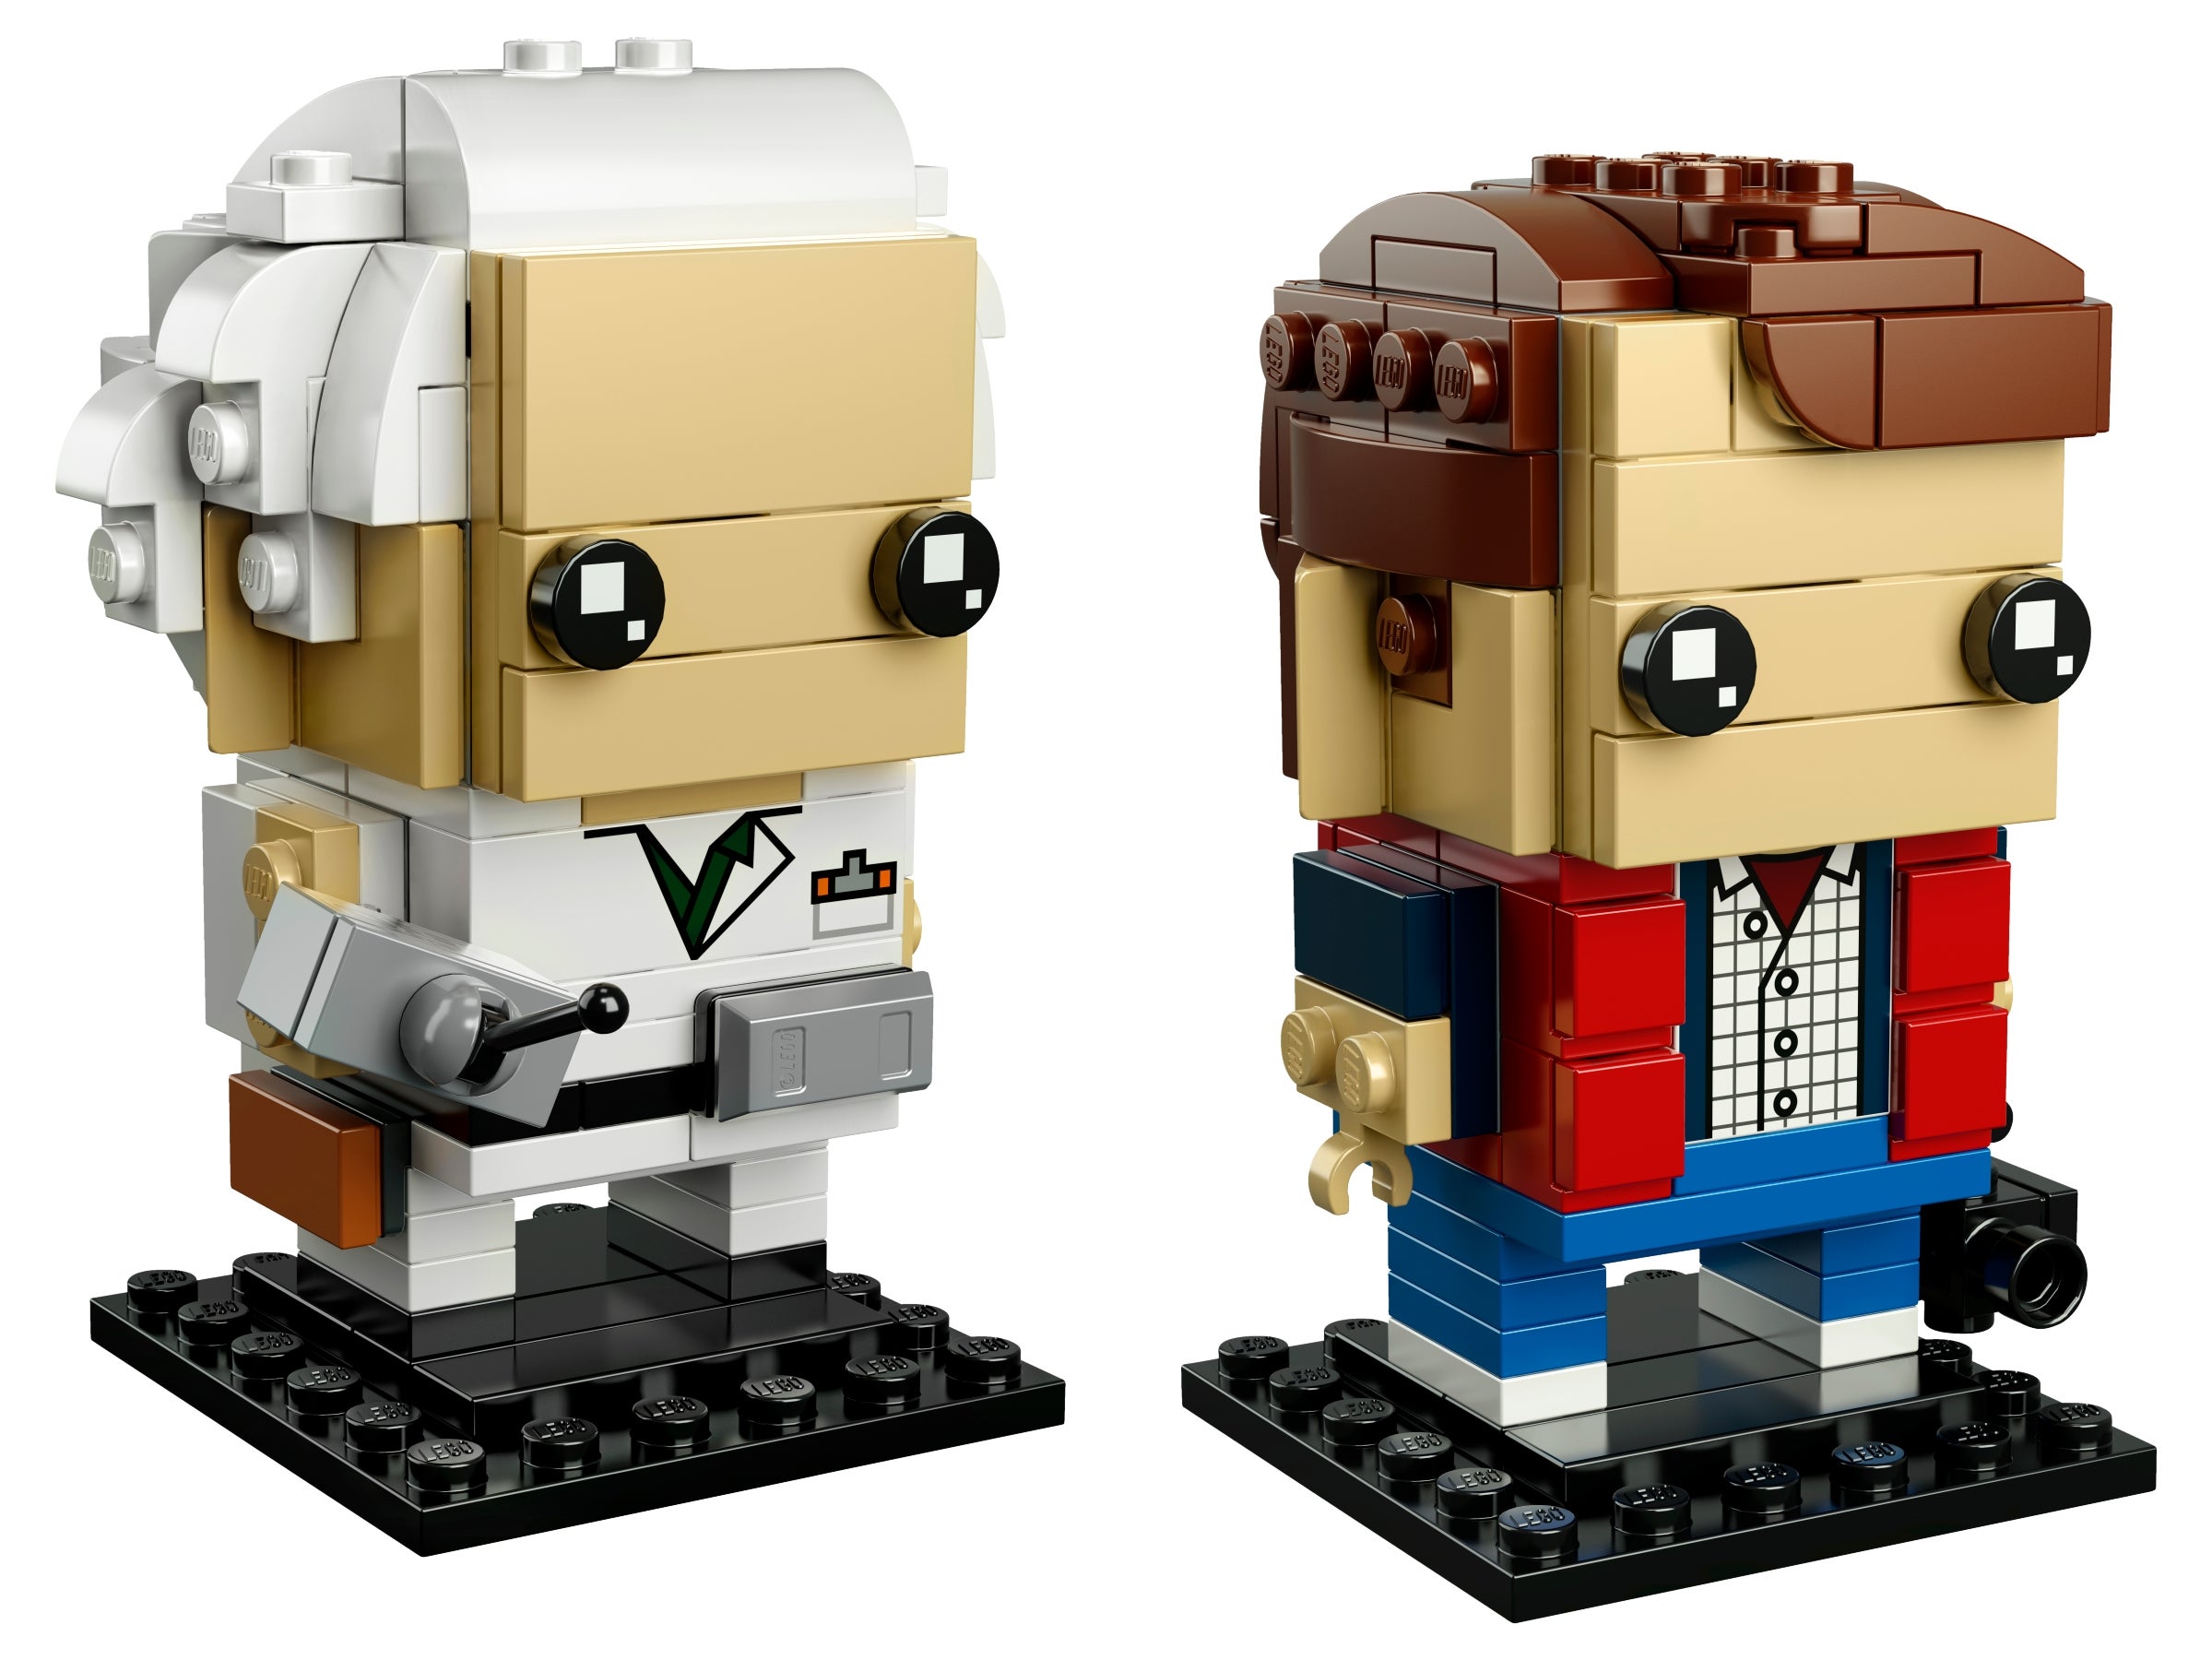 LEGO BrickHeadz Marty McFly & Doc Brown 41611 NEU original verpackt ungeöffnet